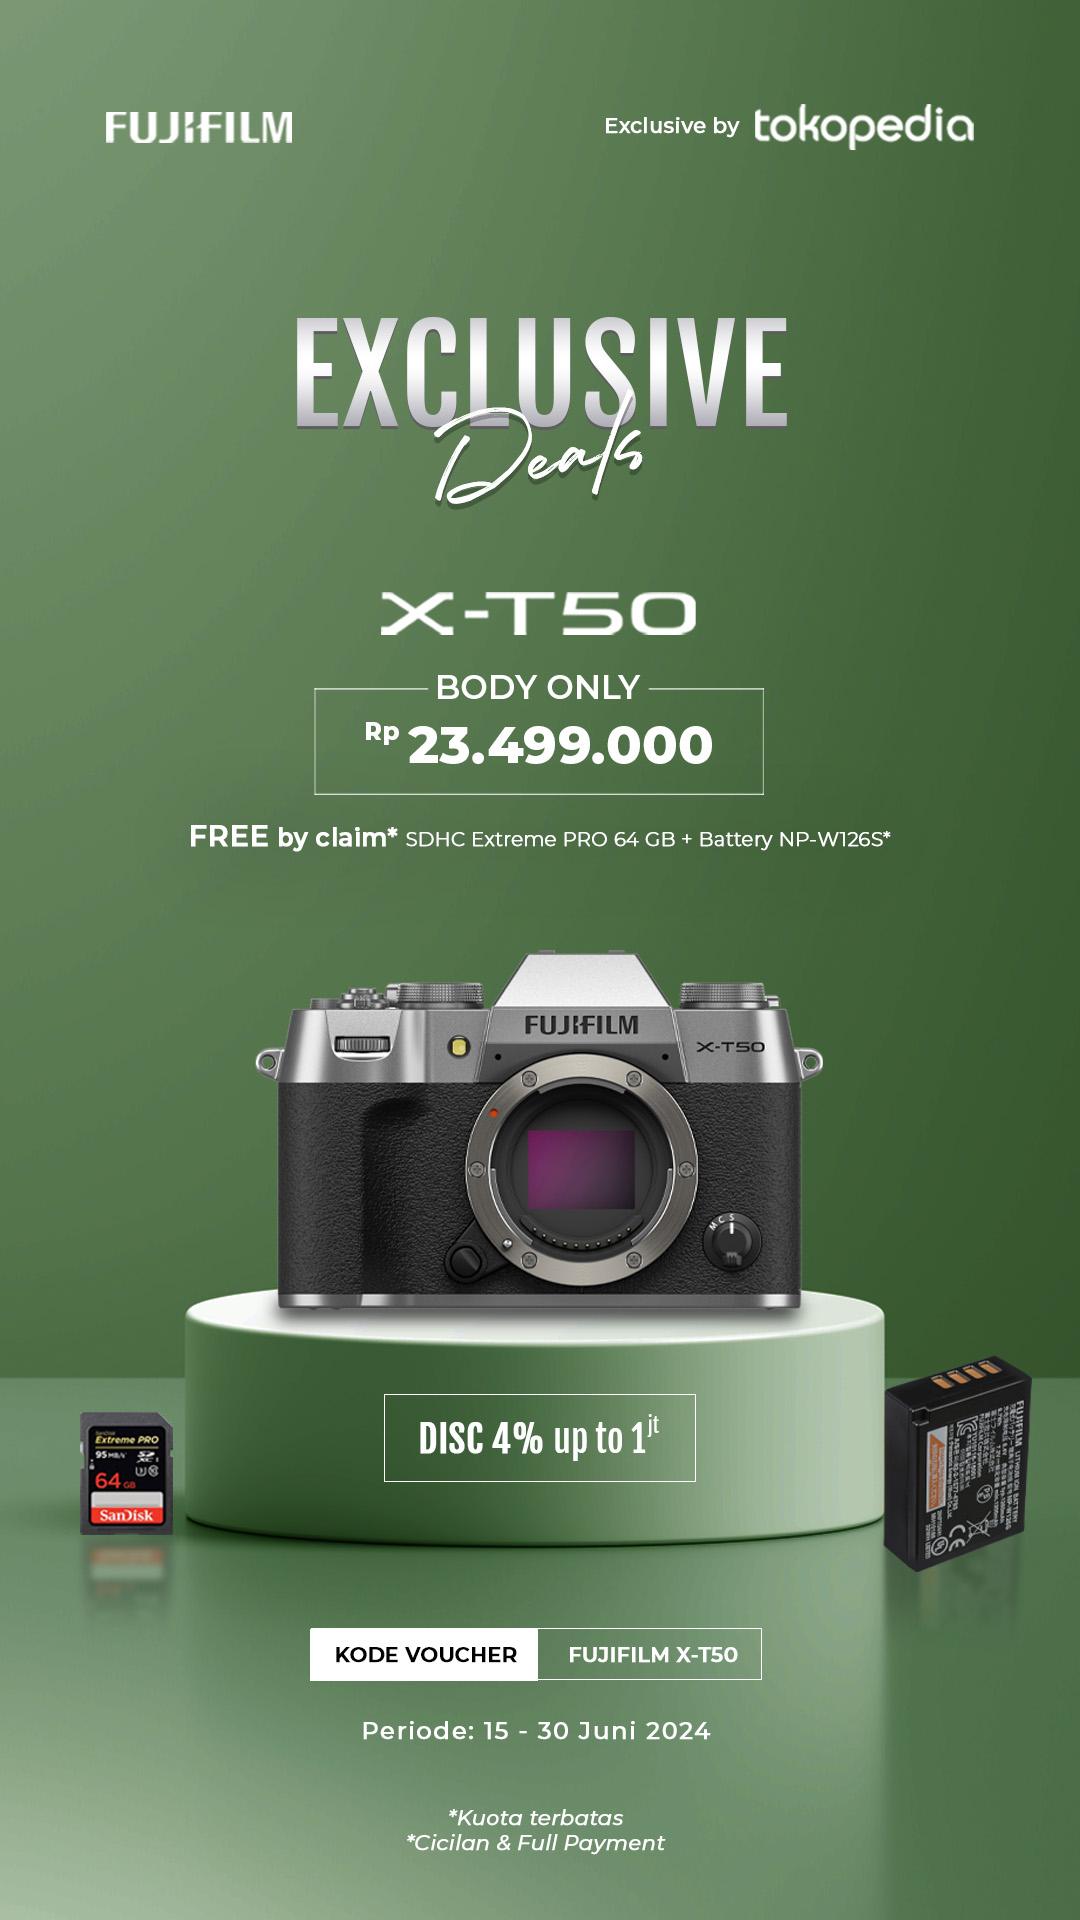 Exclusive Deals X-T50